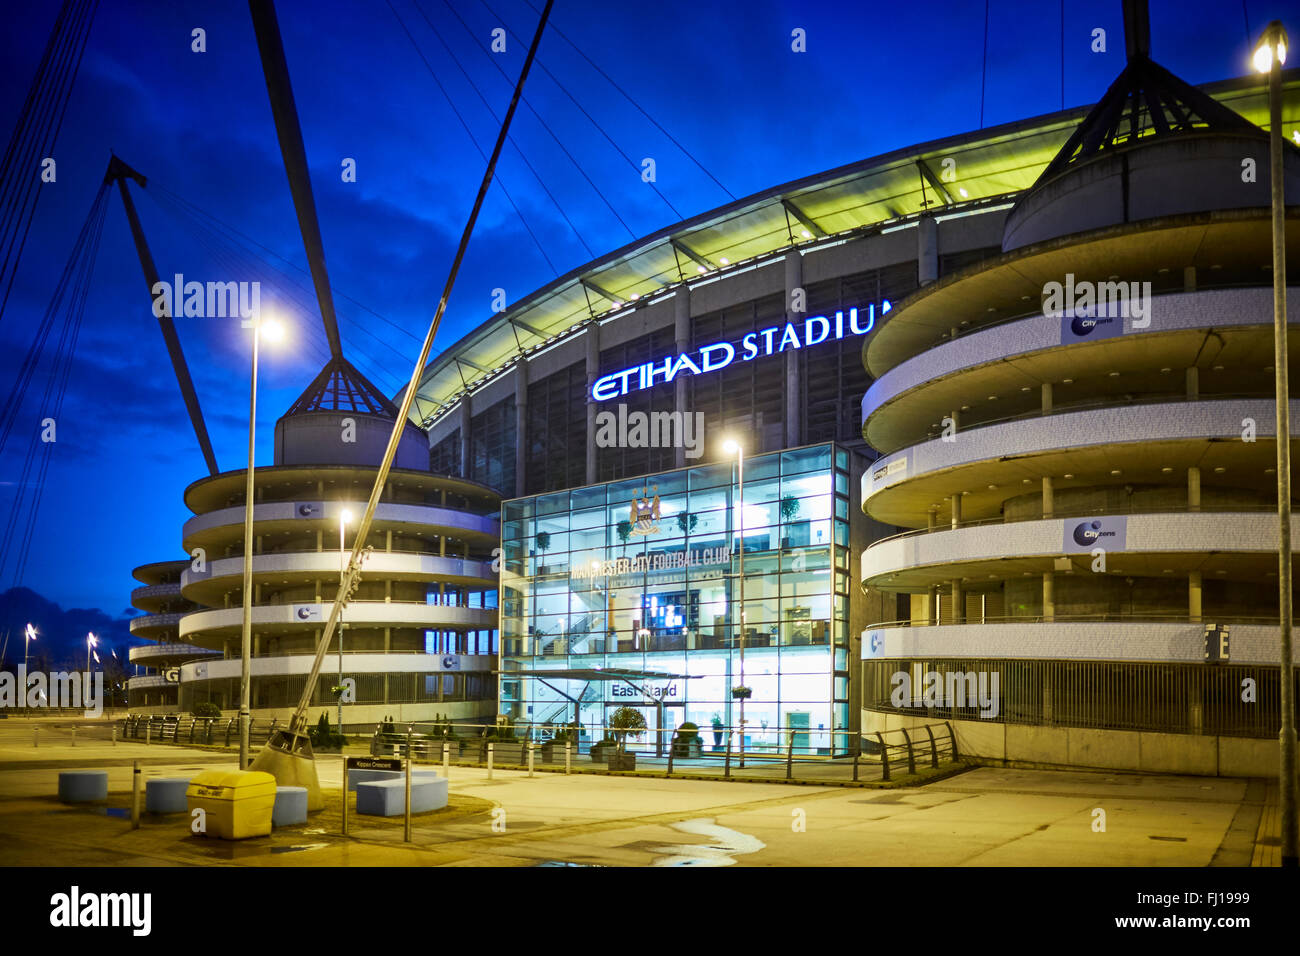 La ville de Manchester Stadium de Manchester, Angleterre, également connu sous le nom de Etihad Stadium, est le terrain d'accueil Banque D'Images